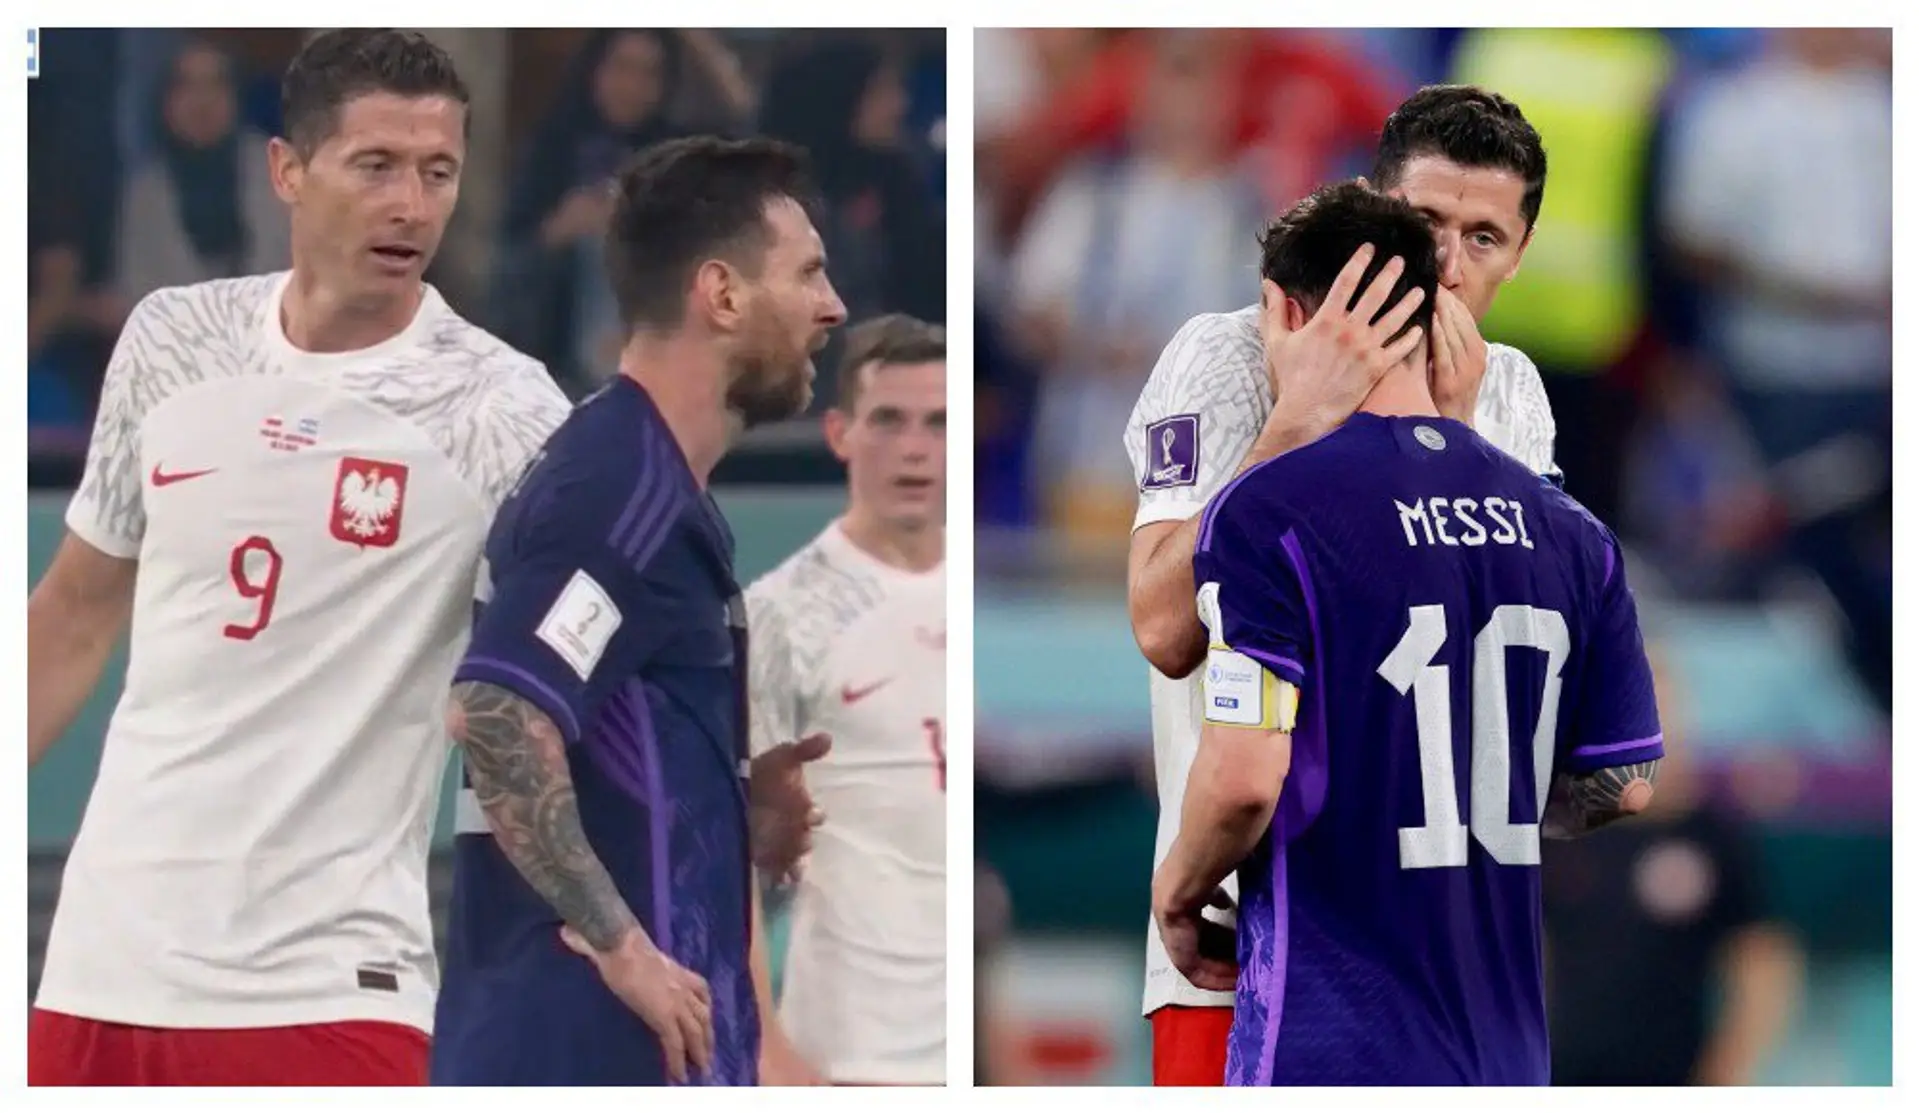 Messi weigerte sich, Lewandowski während des Spiels die Hand zu geben, aber nach dem Schlusspfiff umarmten sich Leo und Robert